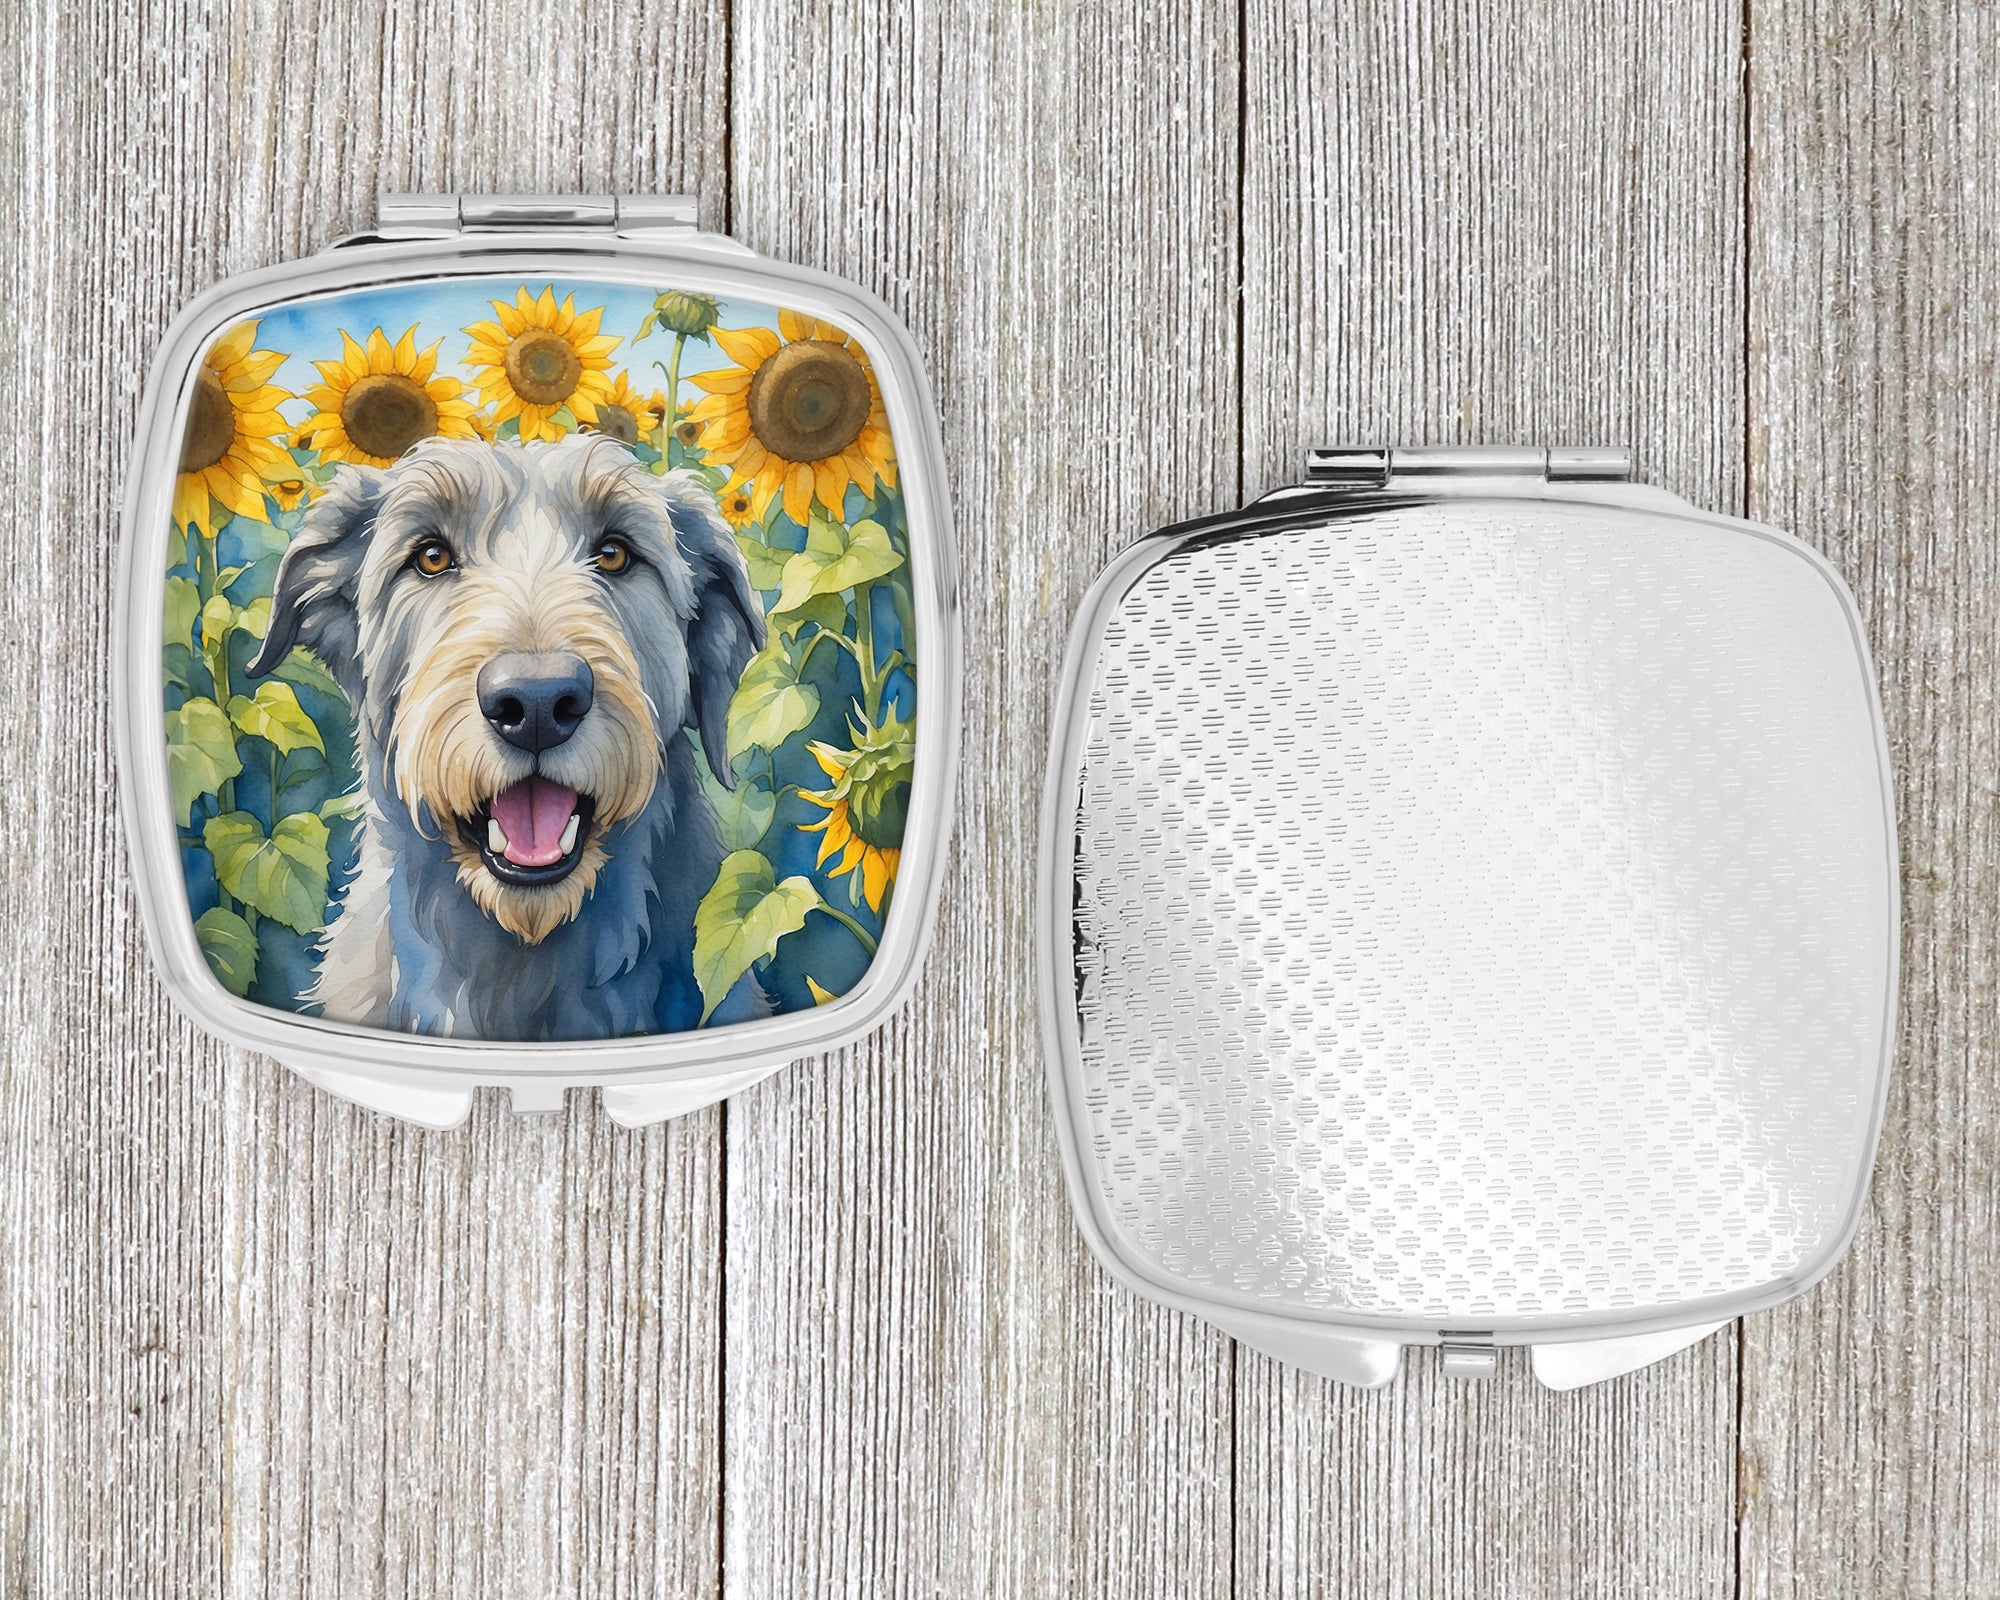 Irish Wolfhound in Sunflowers Compact Mirror